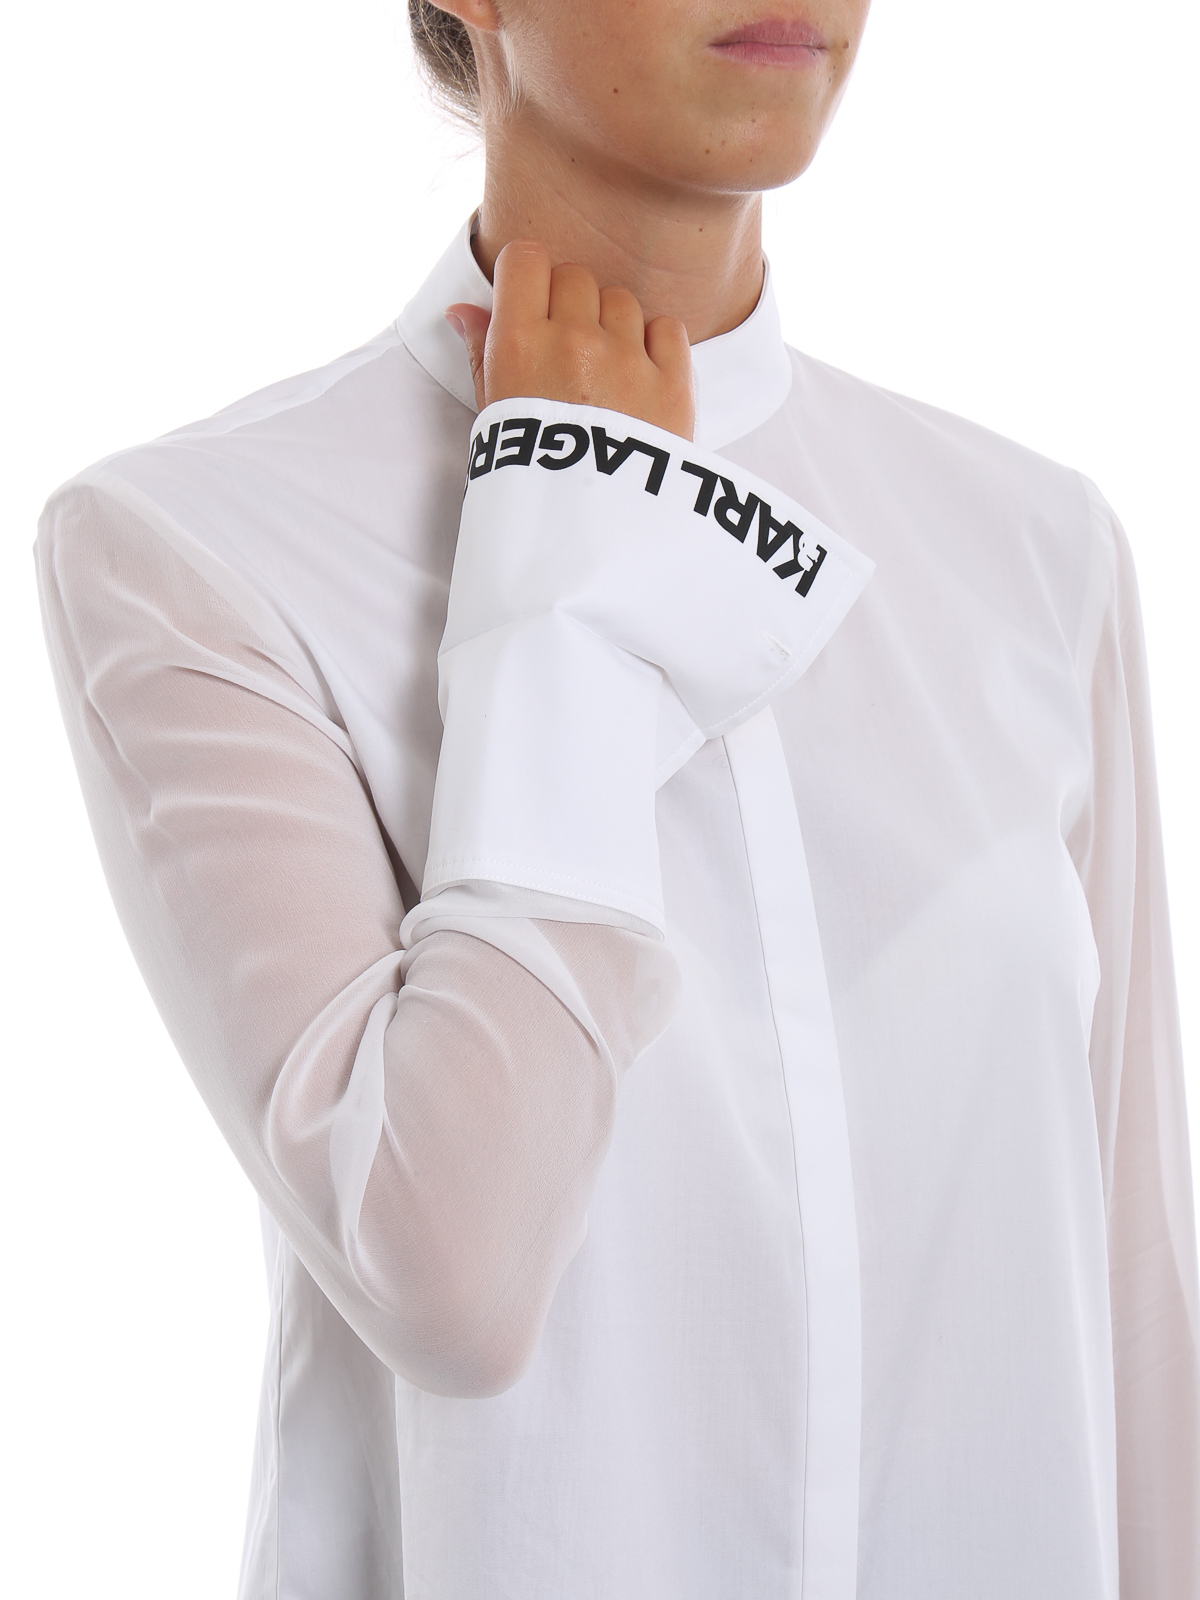 heilig salade exotisch Shirts Karl Lagerfeld - Long poplin and georgette white shirt - 86KW1606100